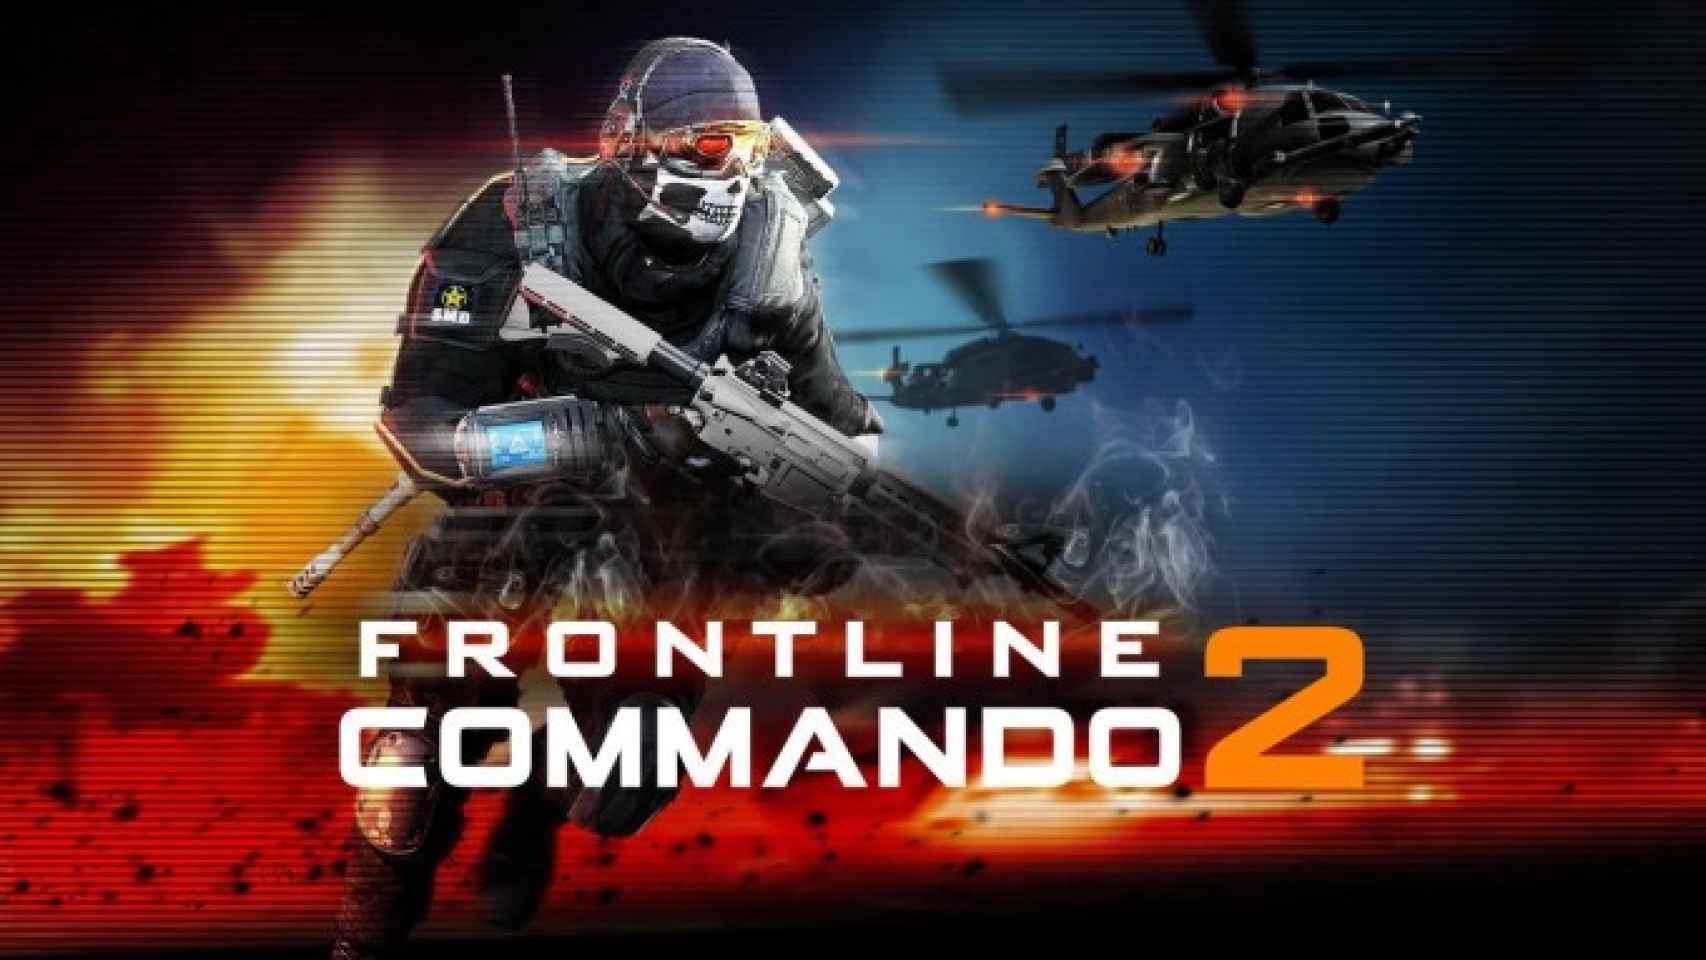 Métete de lleno en la guerra mas realista con Frontline Commando 2